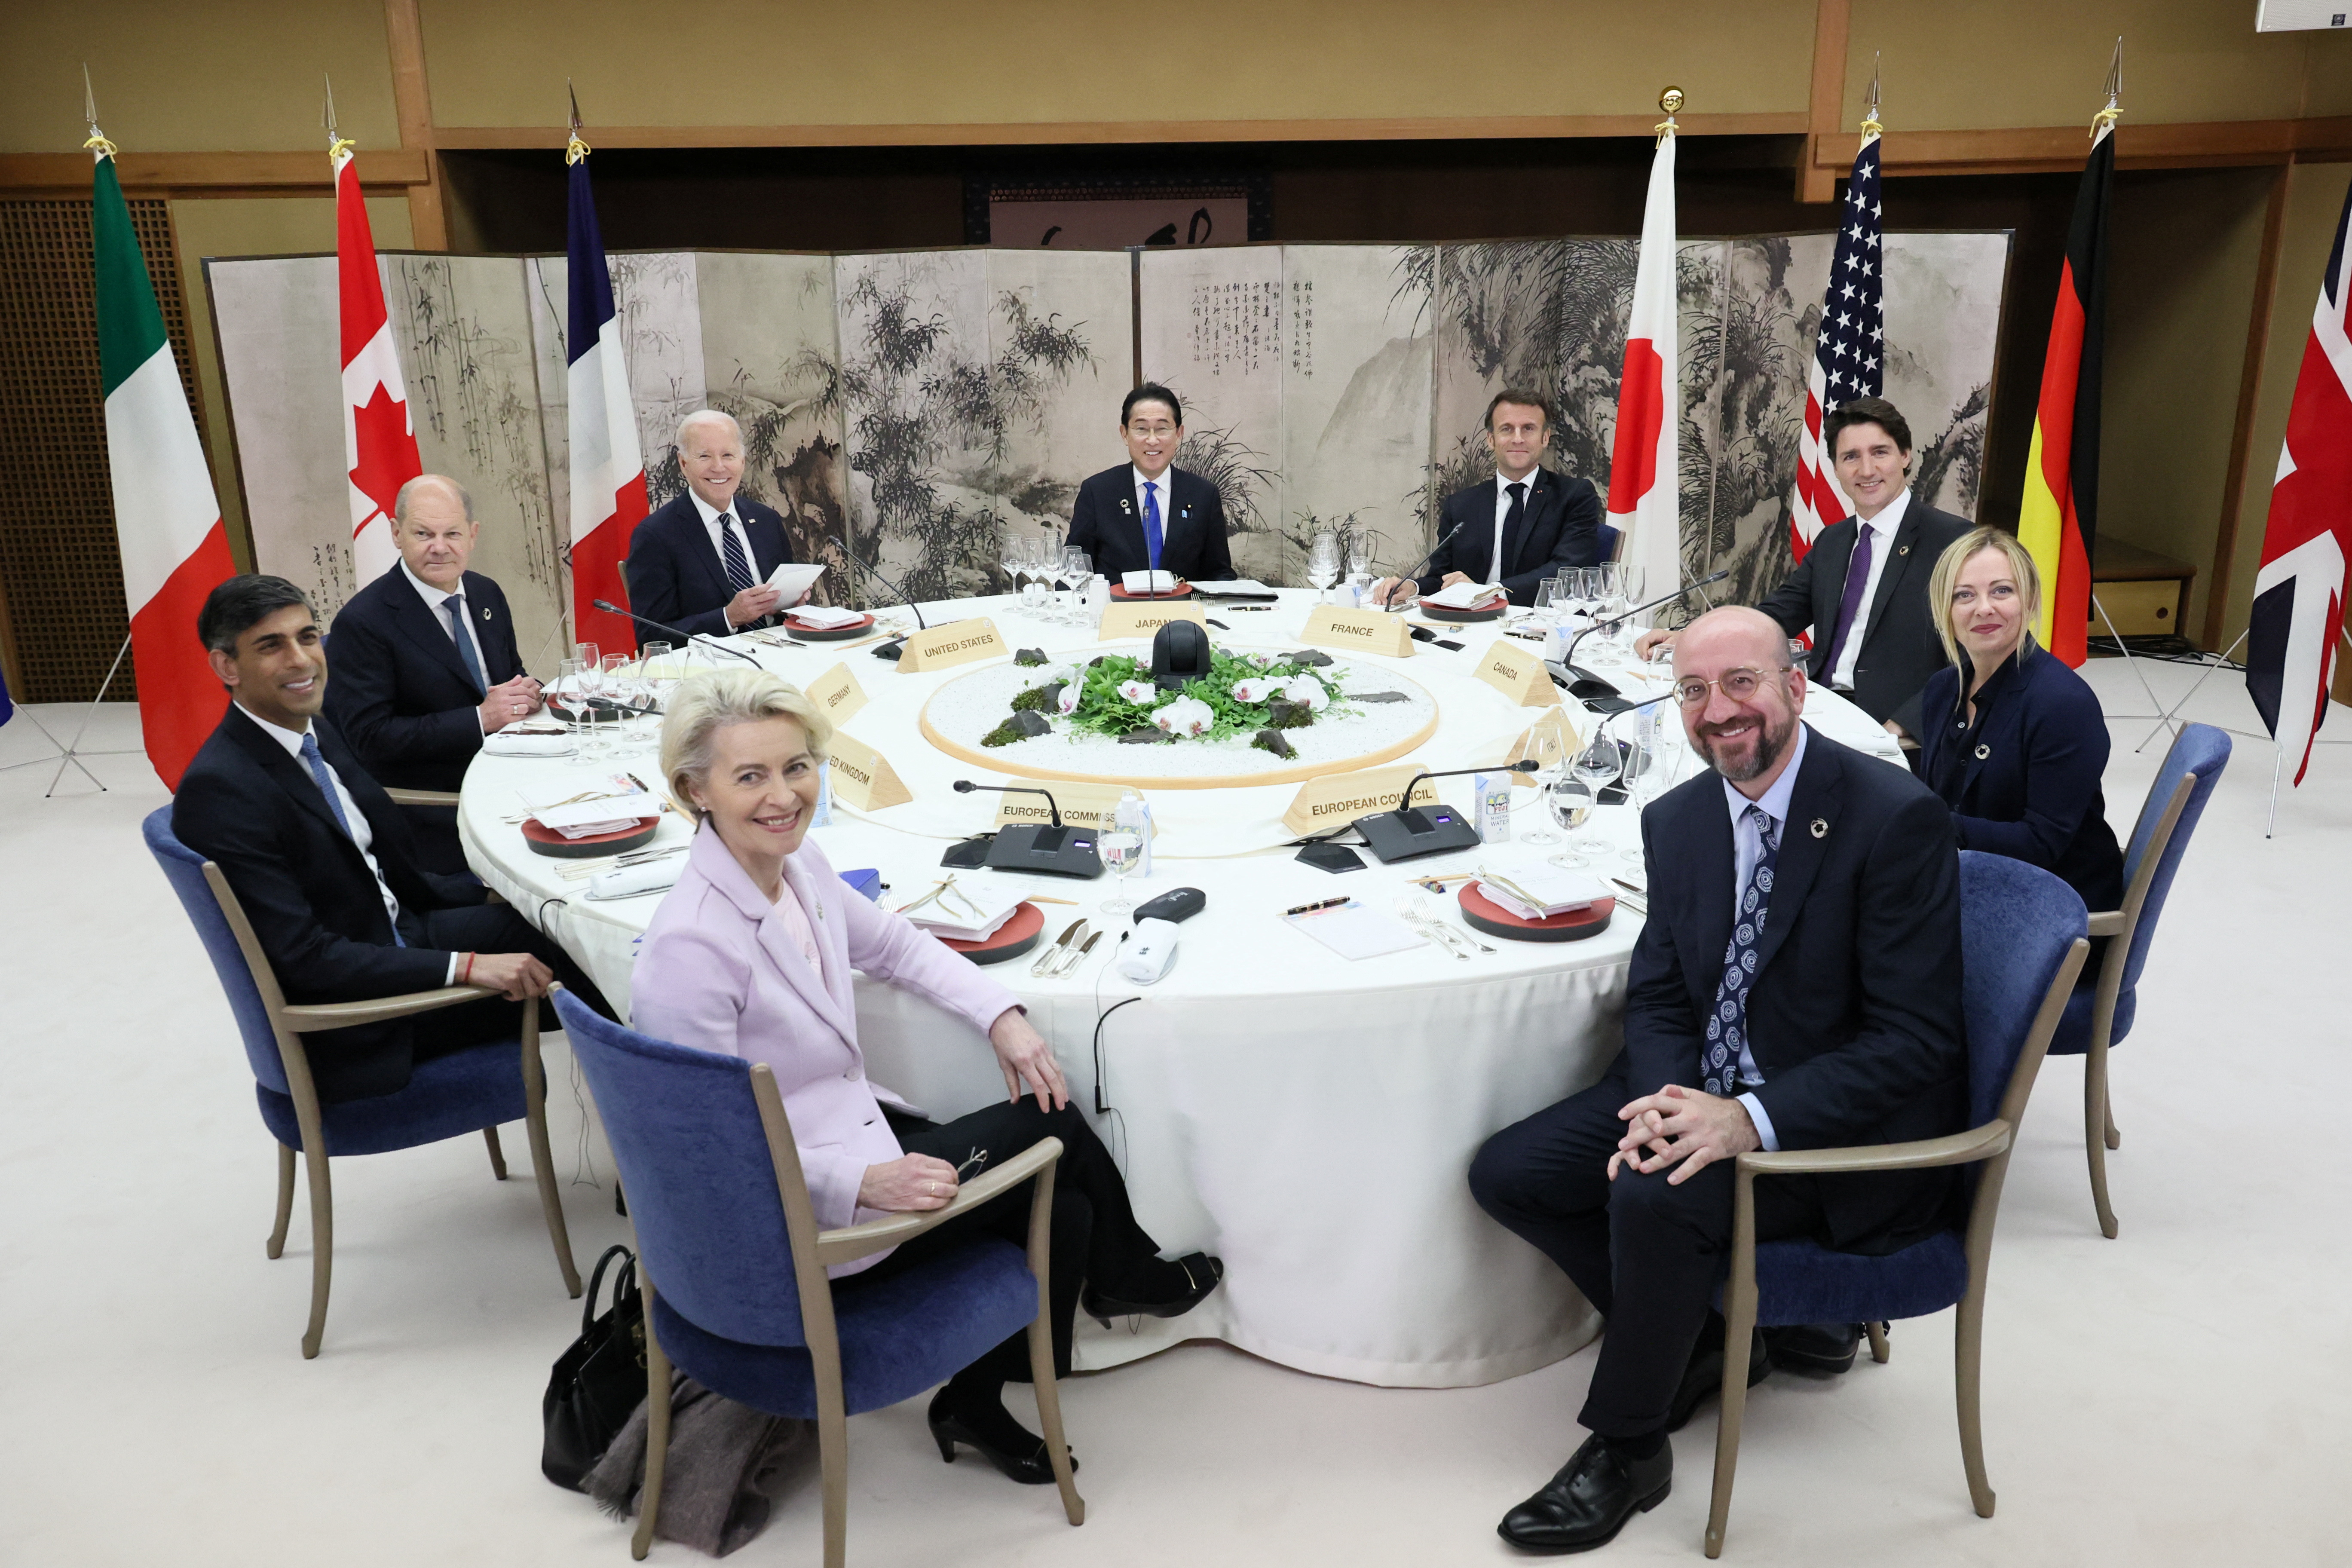 La mesa de las negociaciones en la cumbre del g7 realizada este fin de semana en Hiroshima, Japón. (Cancillería de Japón vía Reuters)